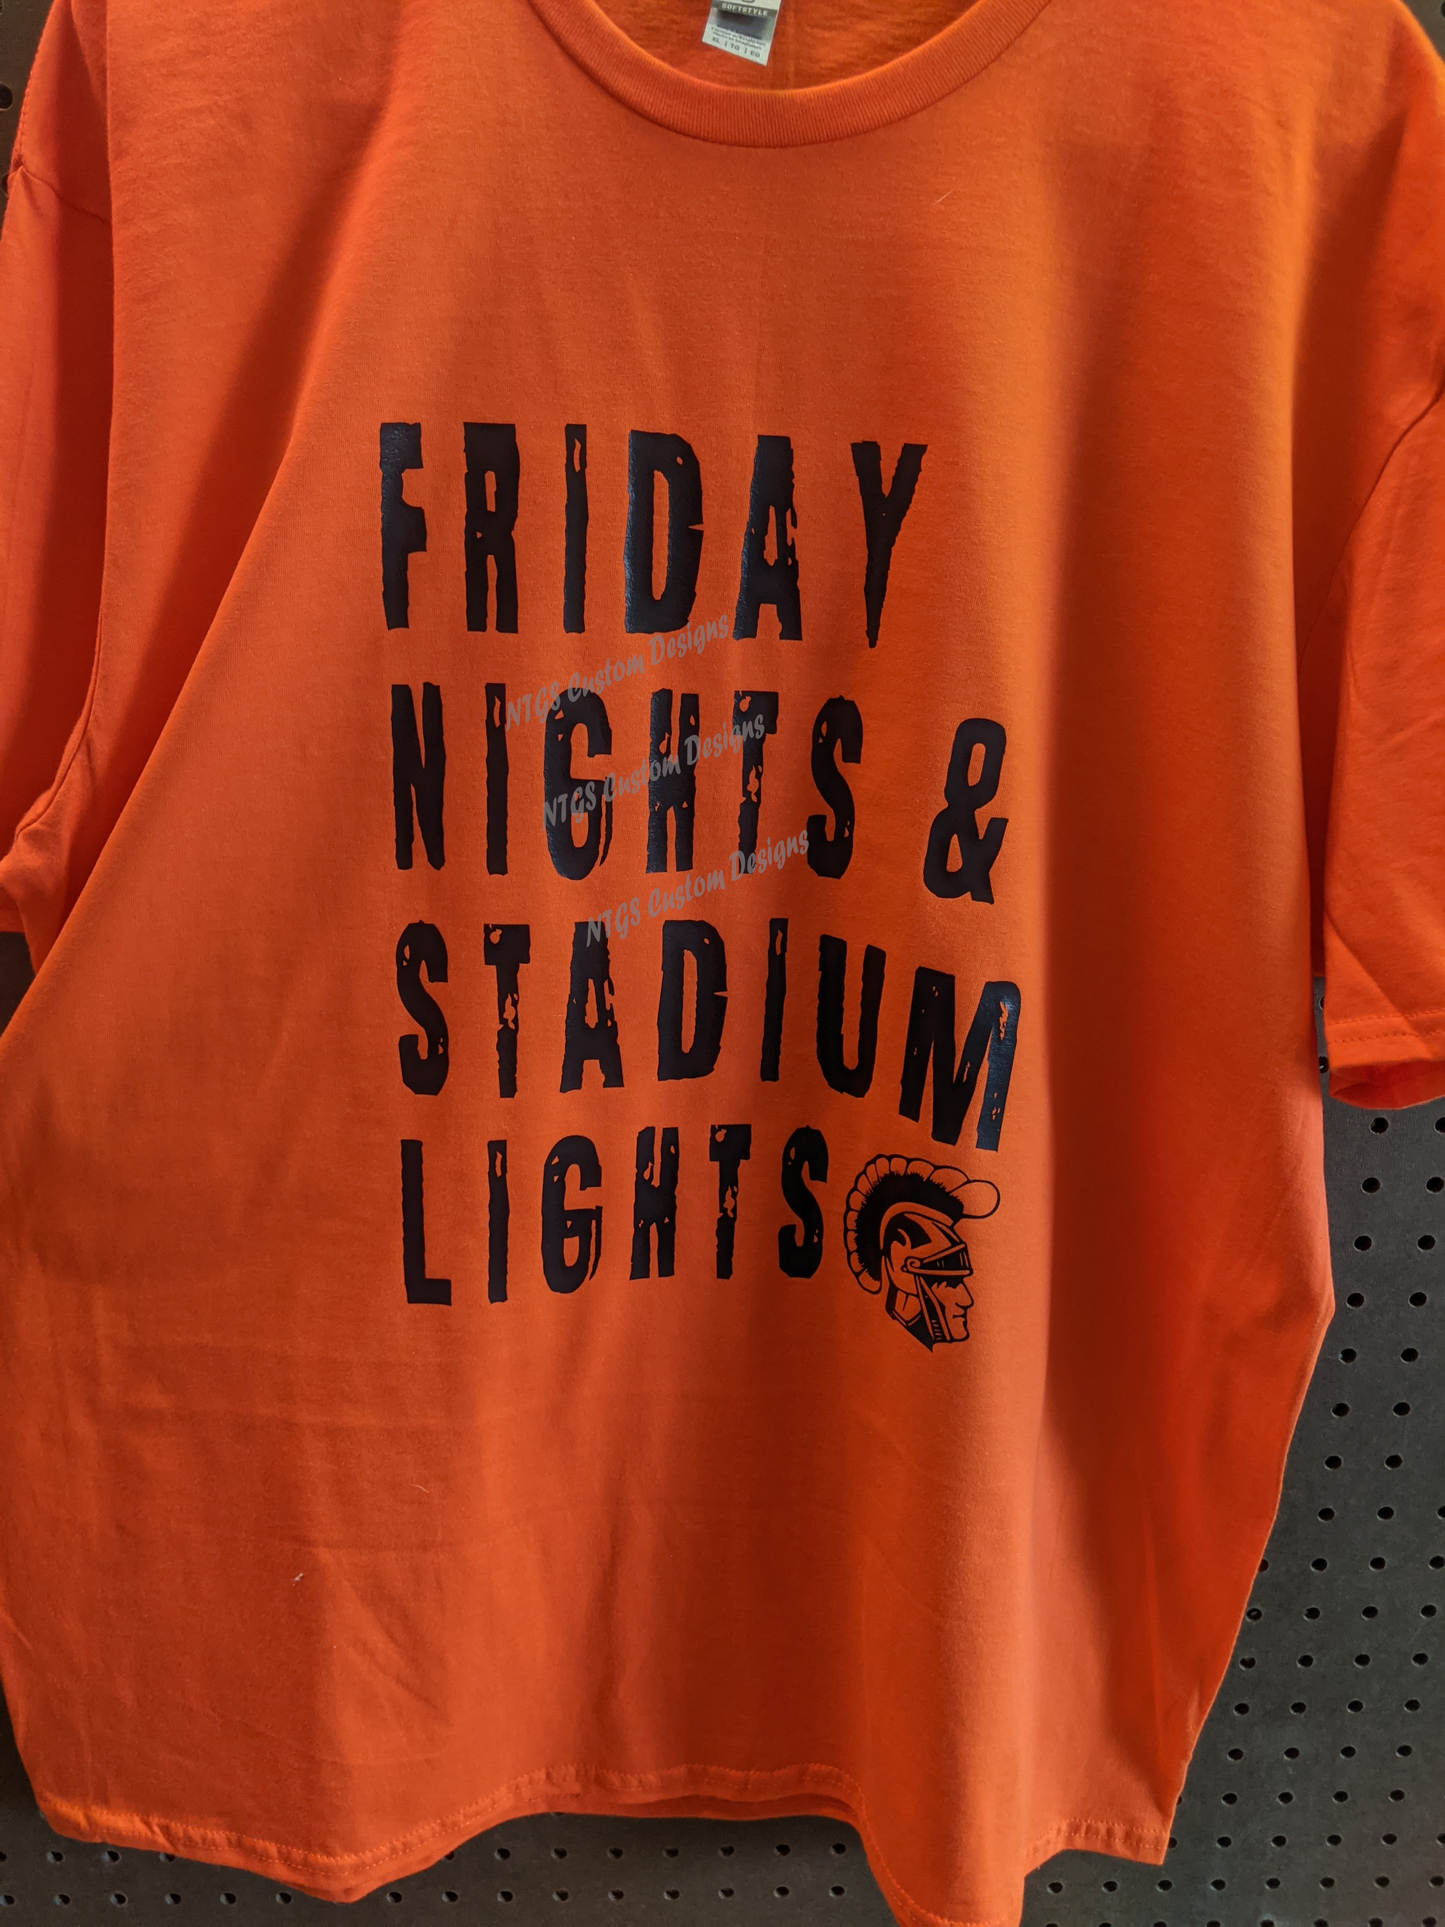 Friday nights, and Stadium lights